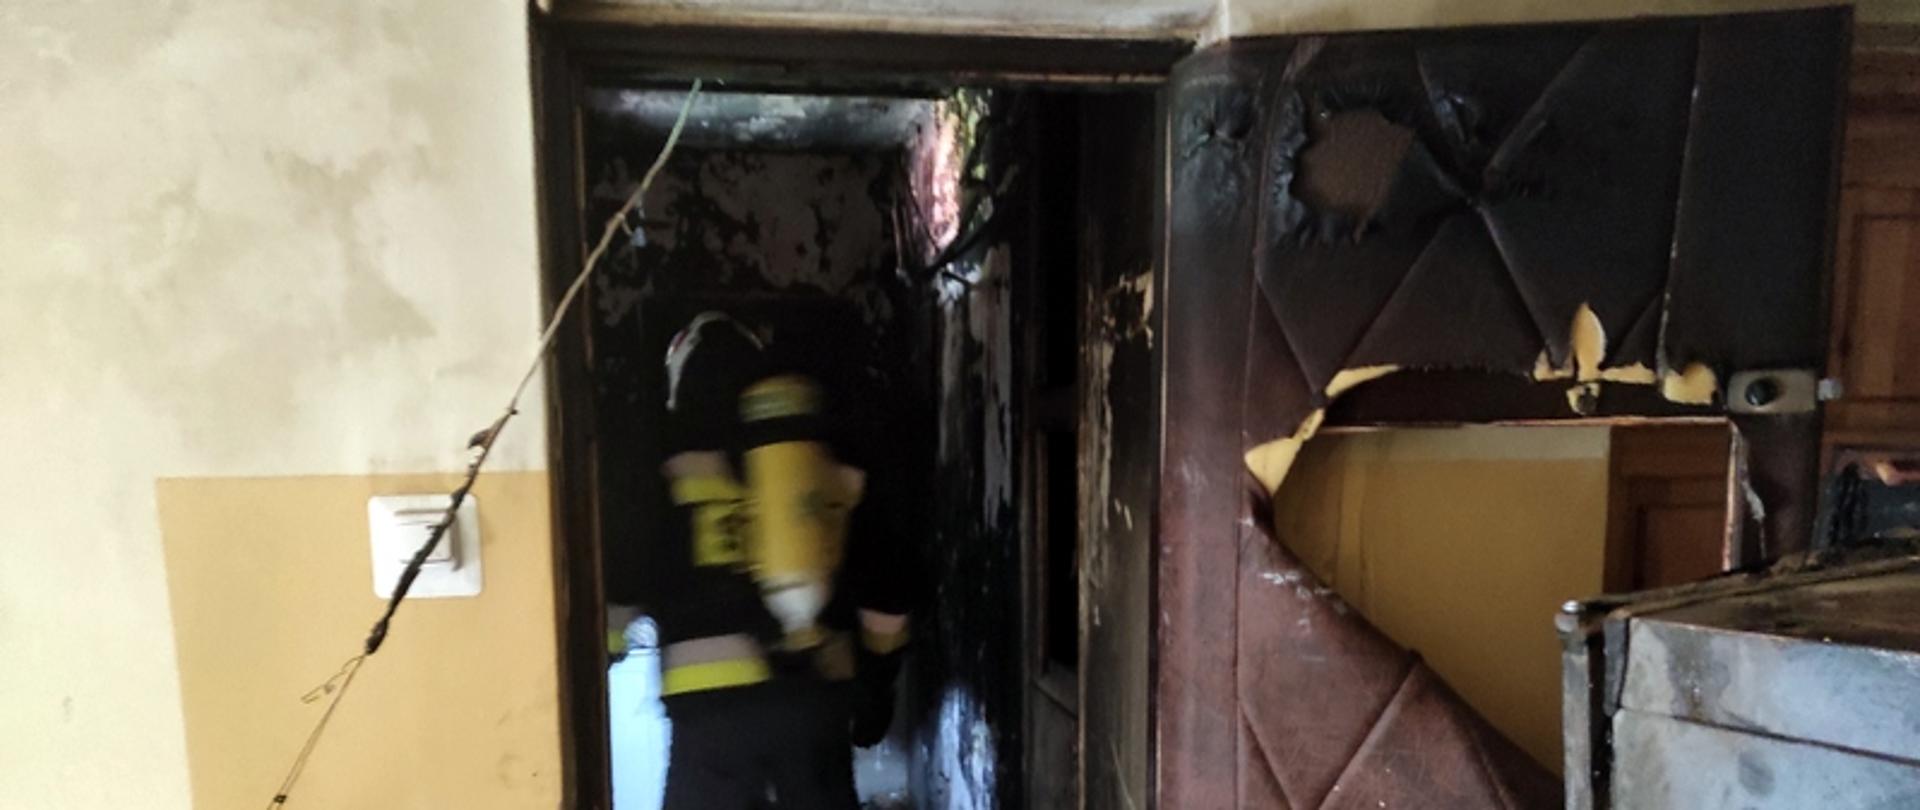 na zdjęciu widać otwarte drzwi do mieszkania, w którym doszło do pożaru. Widać sylwetkę strażaka w mundurze bojowym wewnątrz.